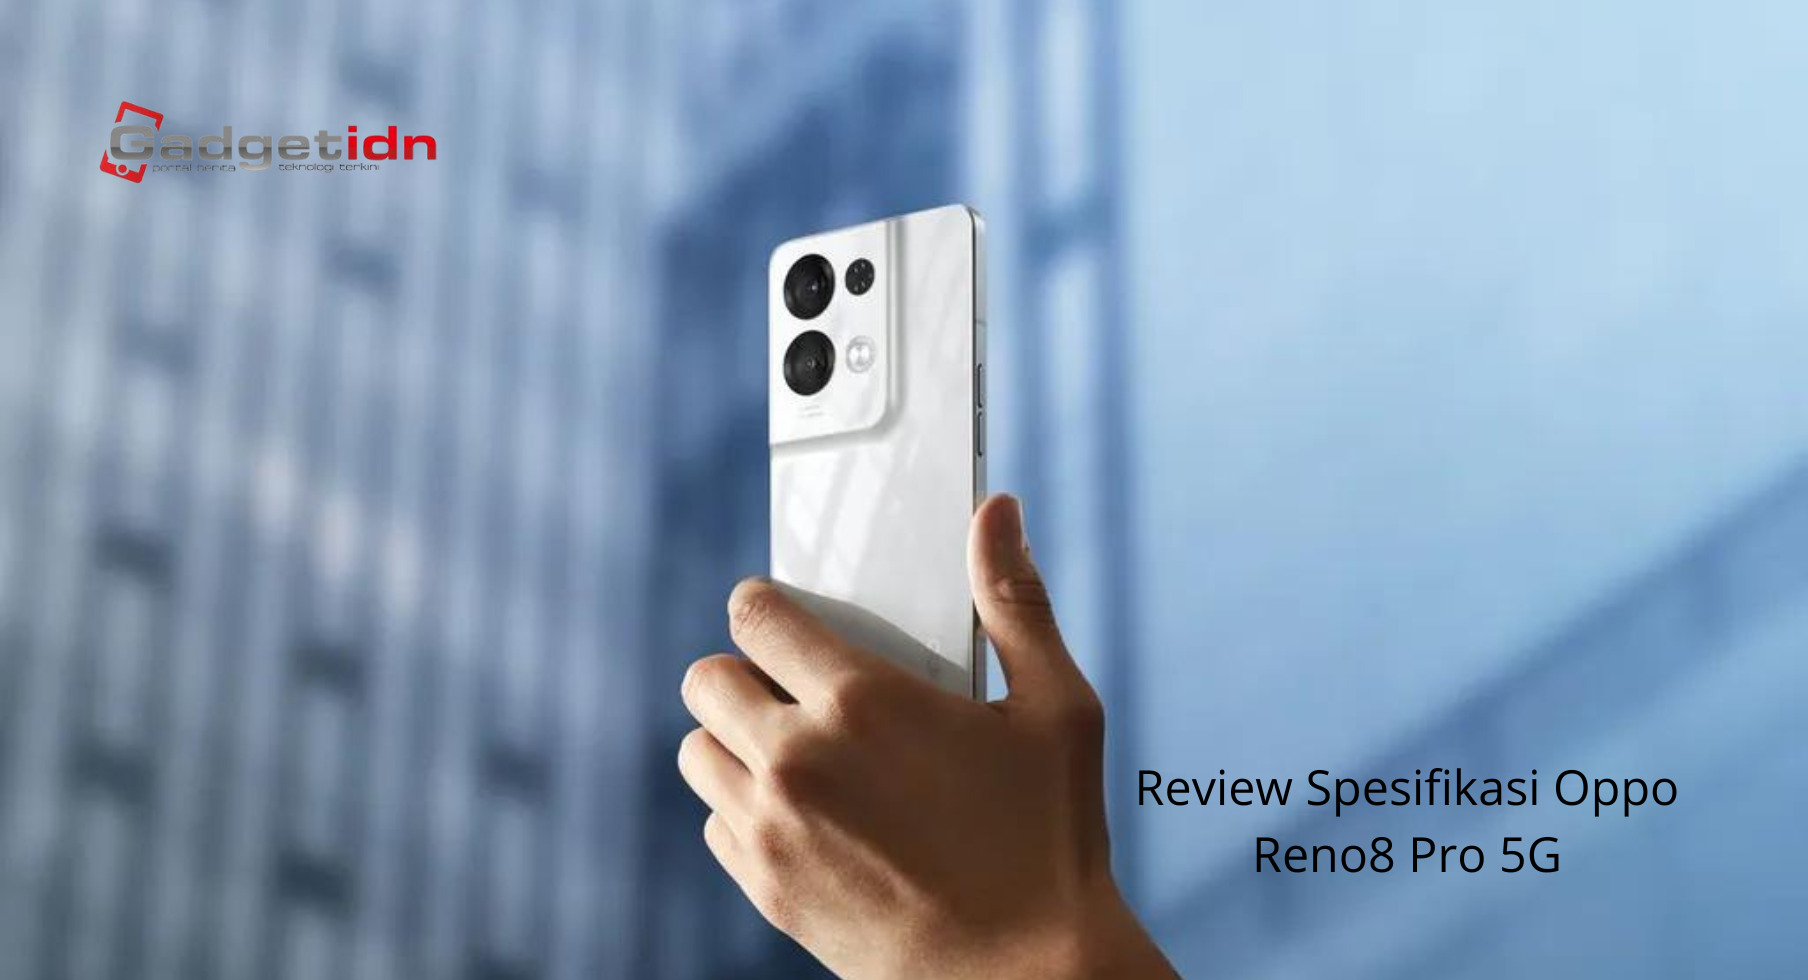 Review Spesifikasi Oppo Reno8 Pro 5G